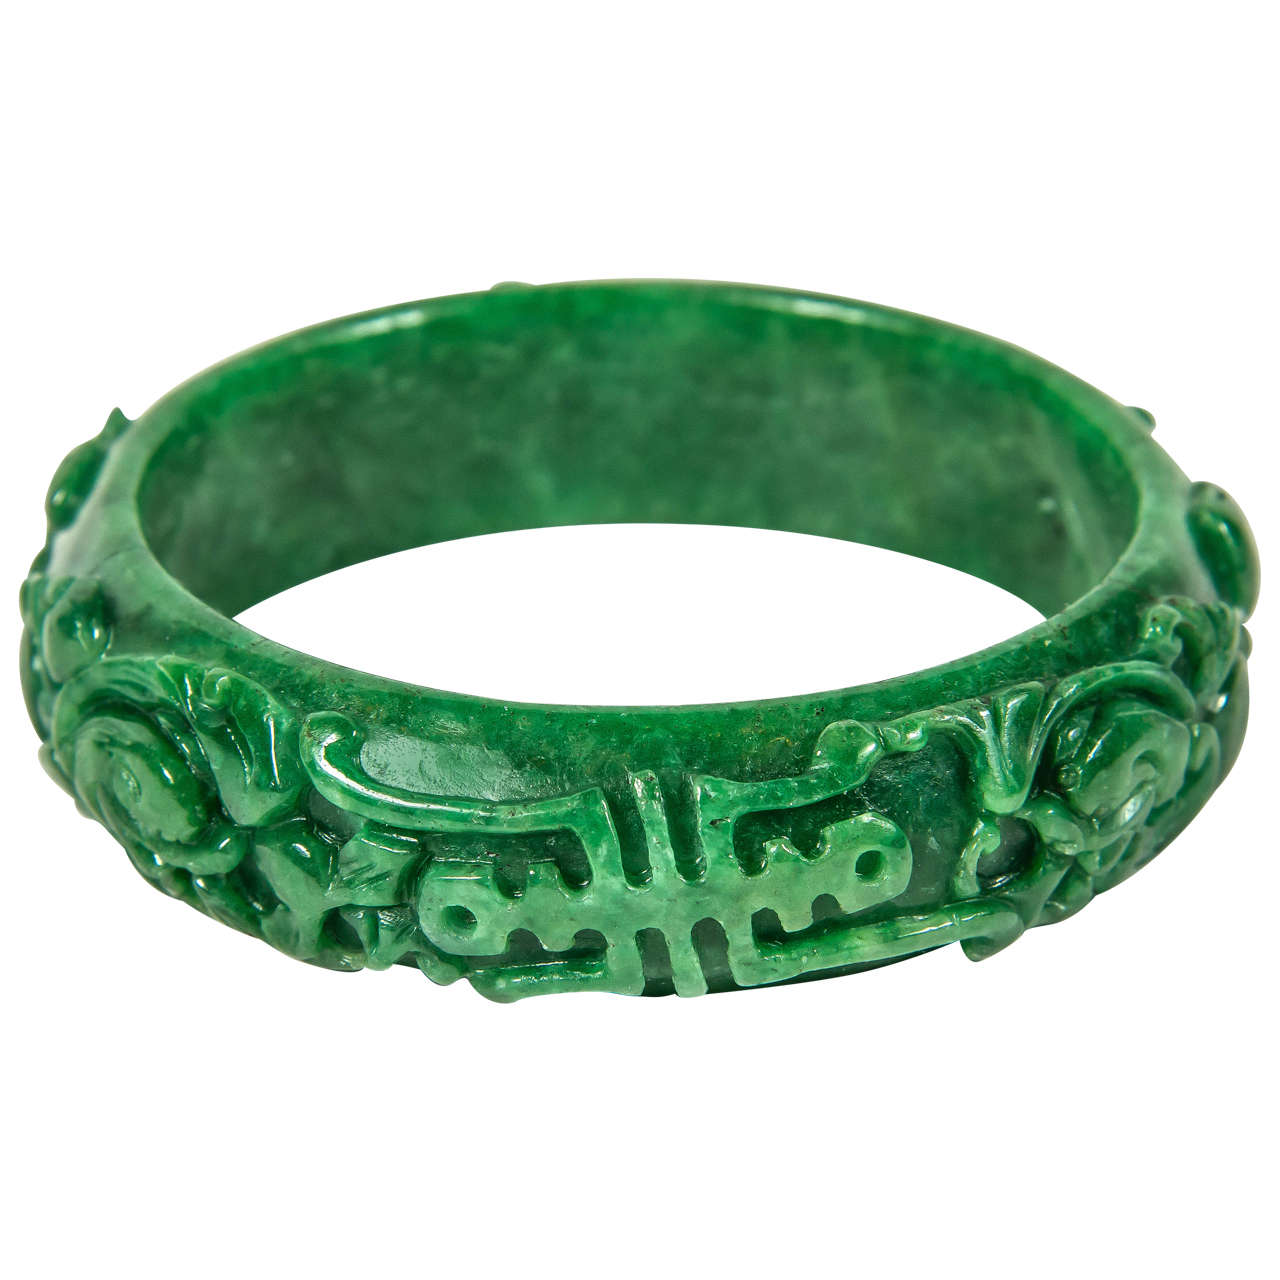 Vintage Green Stone Engraved Bracelet Bangle